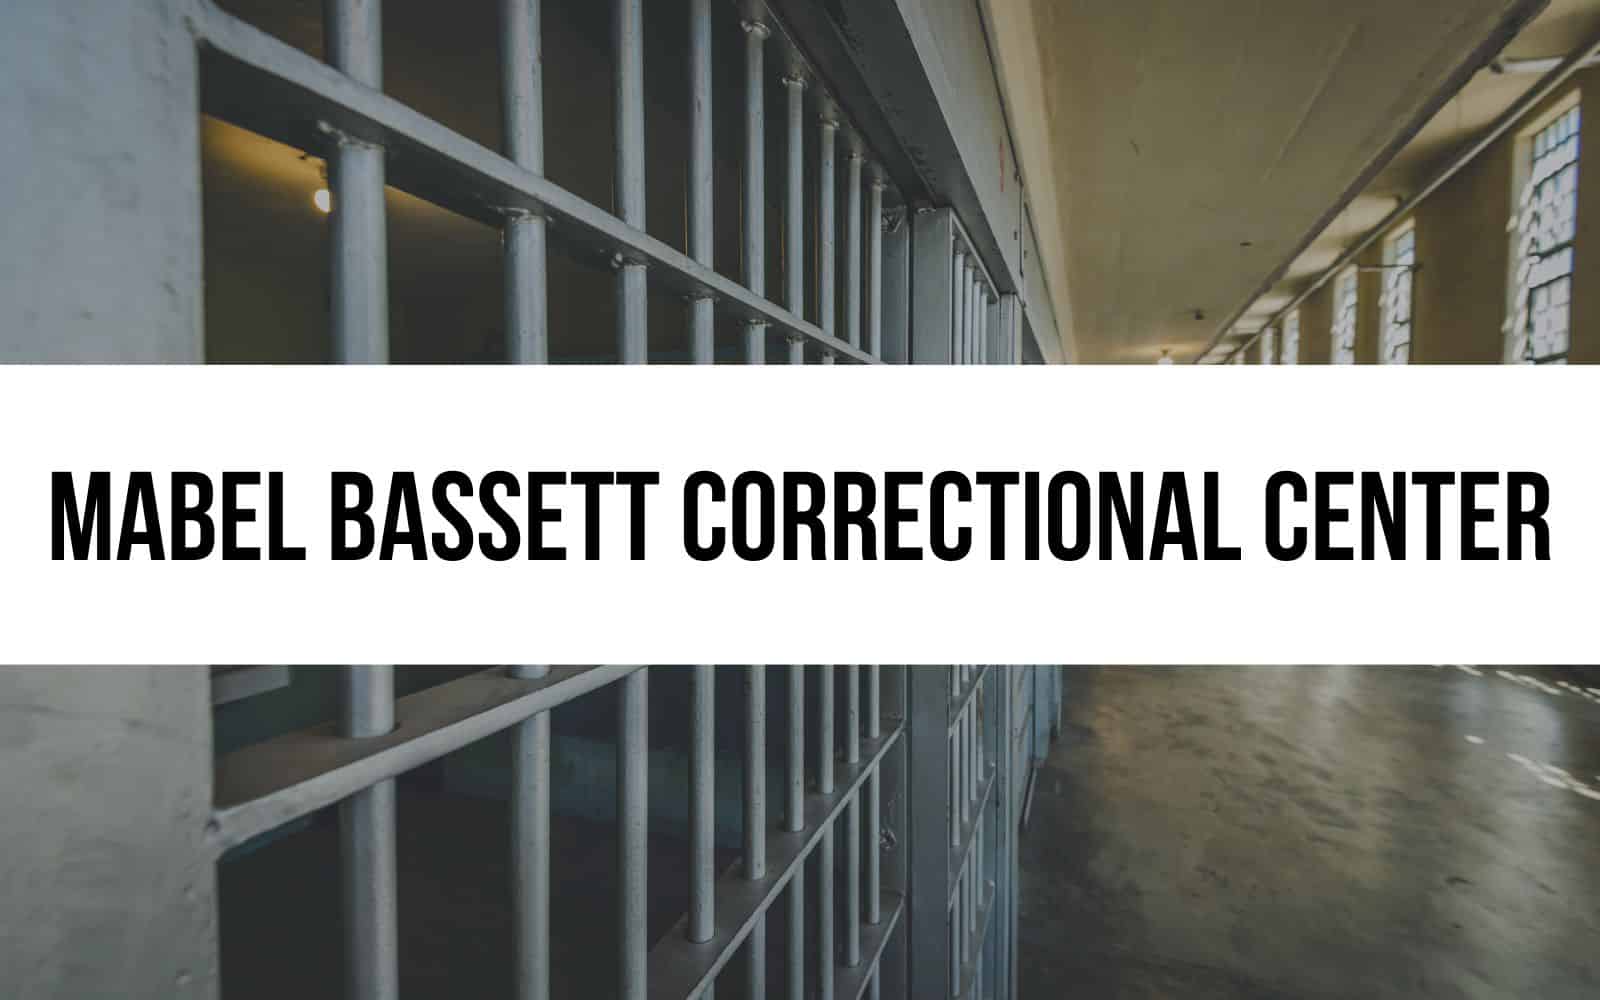 Mabel Bassett Correctional Center